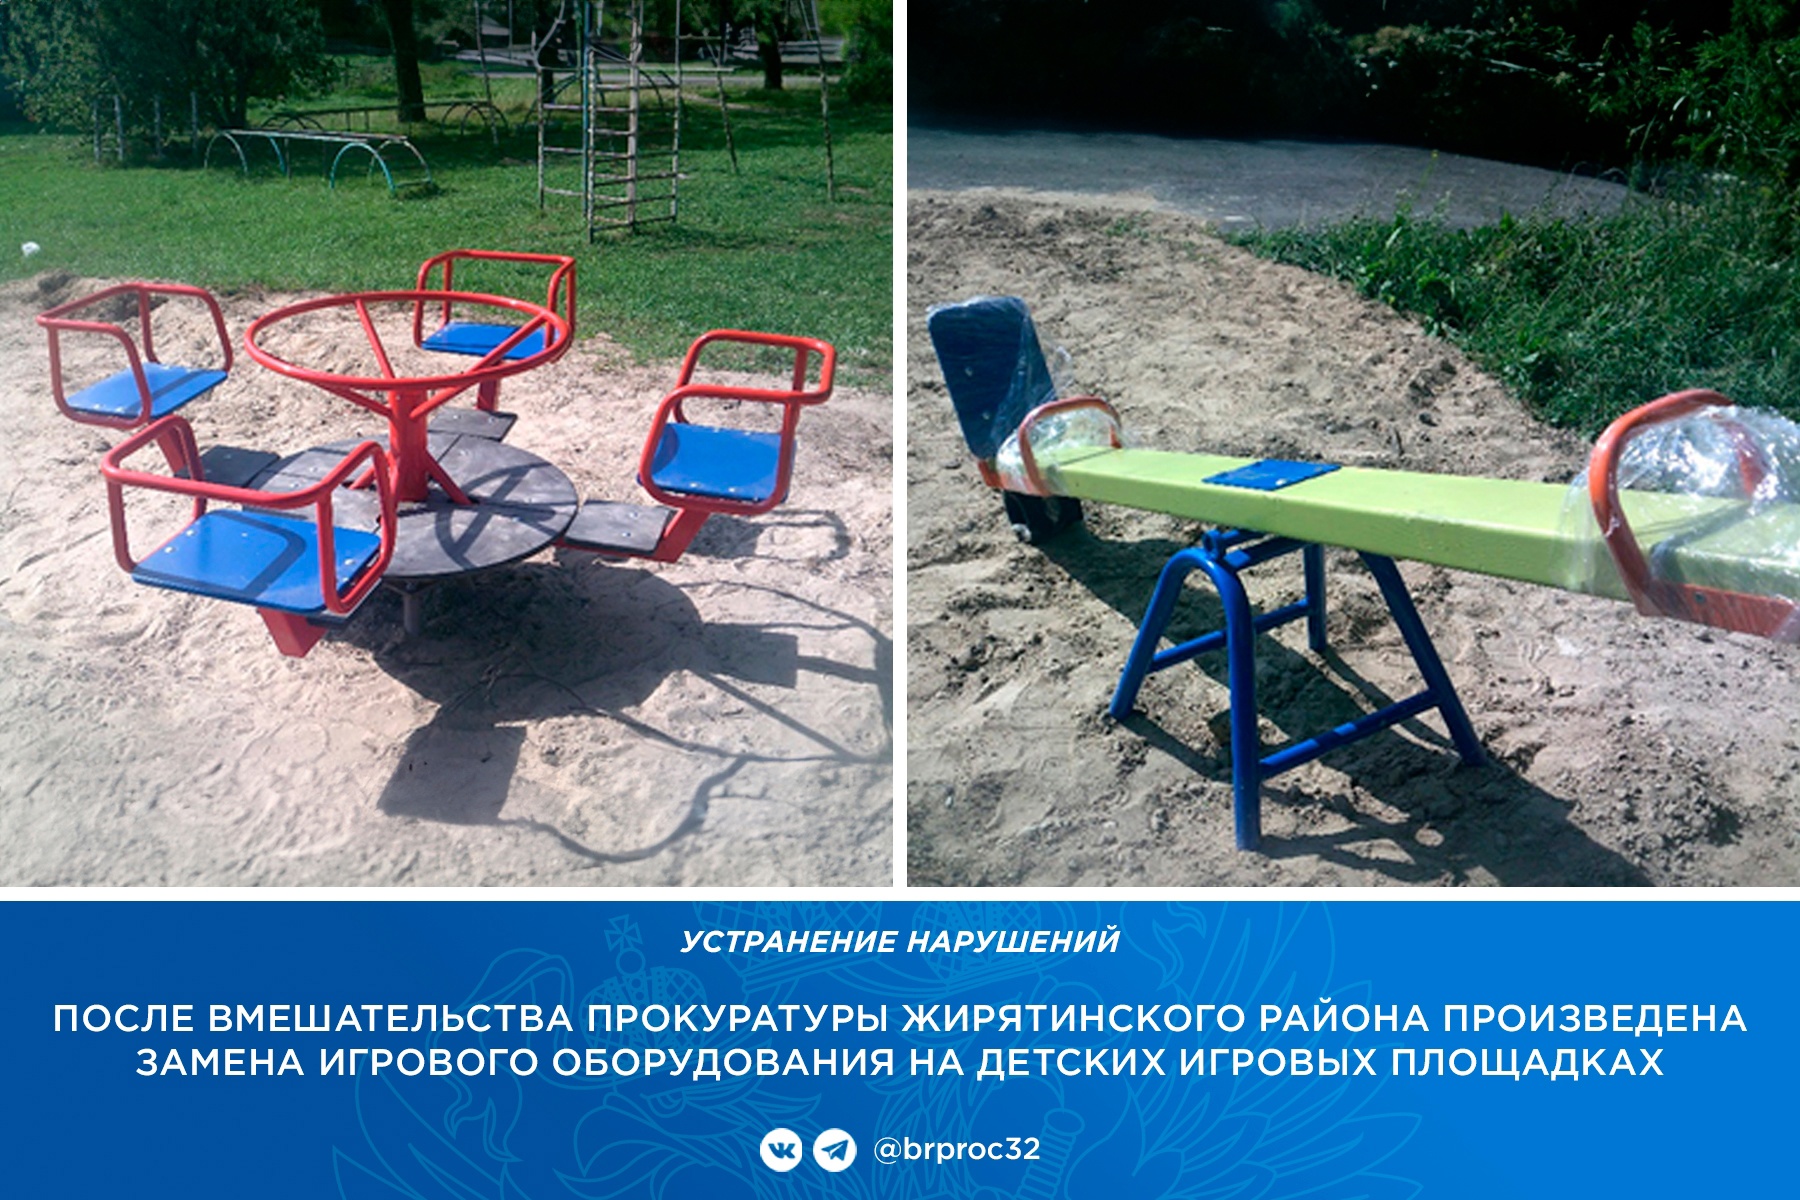 В Жирятино по требованию прокуратуры на детских площадках заменили сломанные качели и карусели